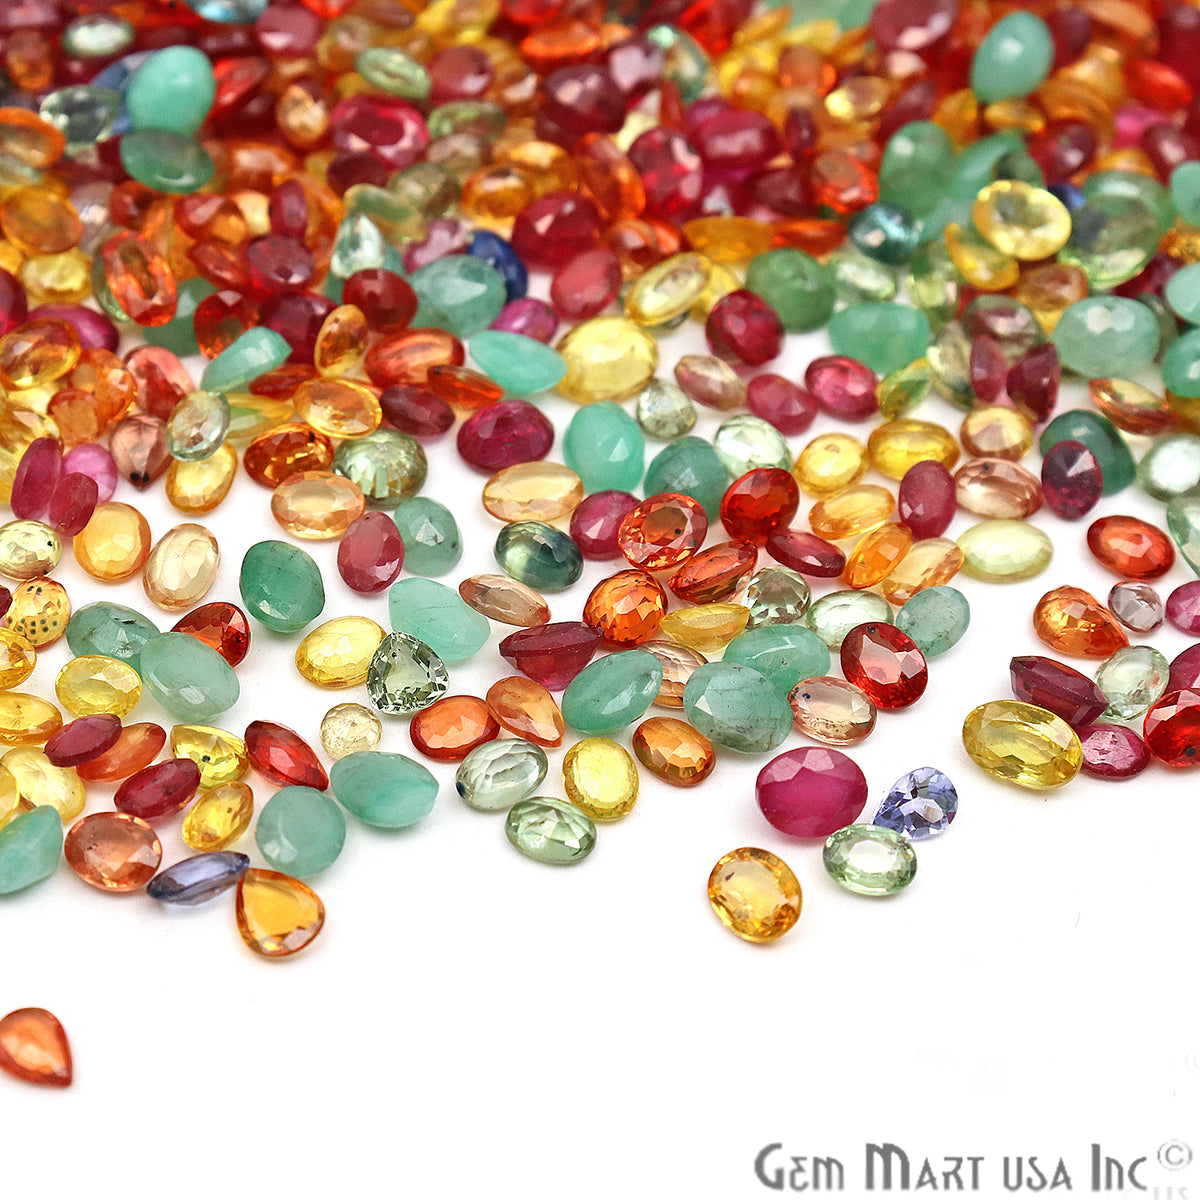 2oz Mixed Gem Loose Gemstones, Mixed Gem Stone, Multi Color Stone, Mix  Shape Stones